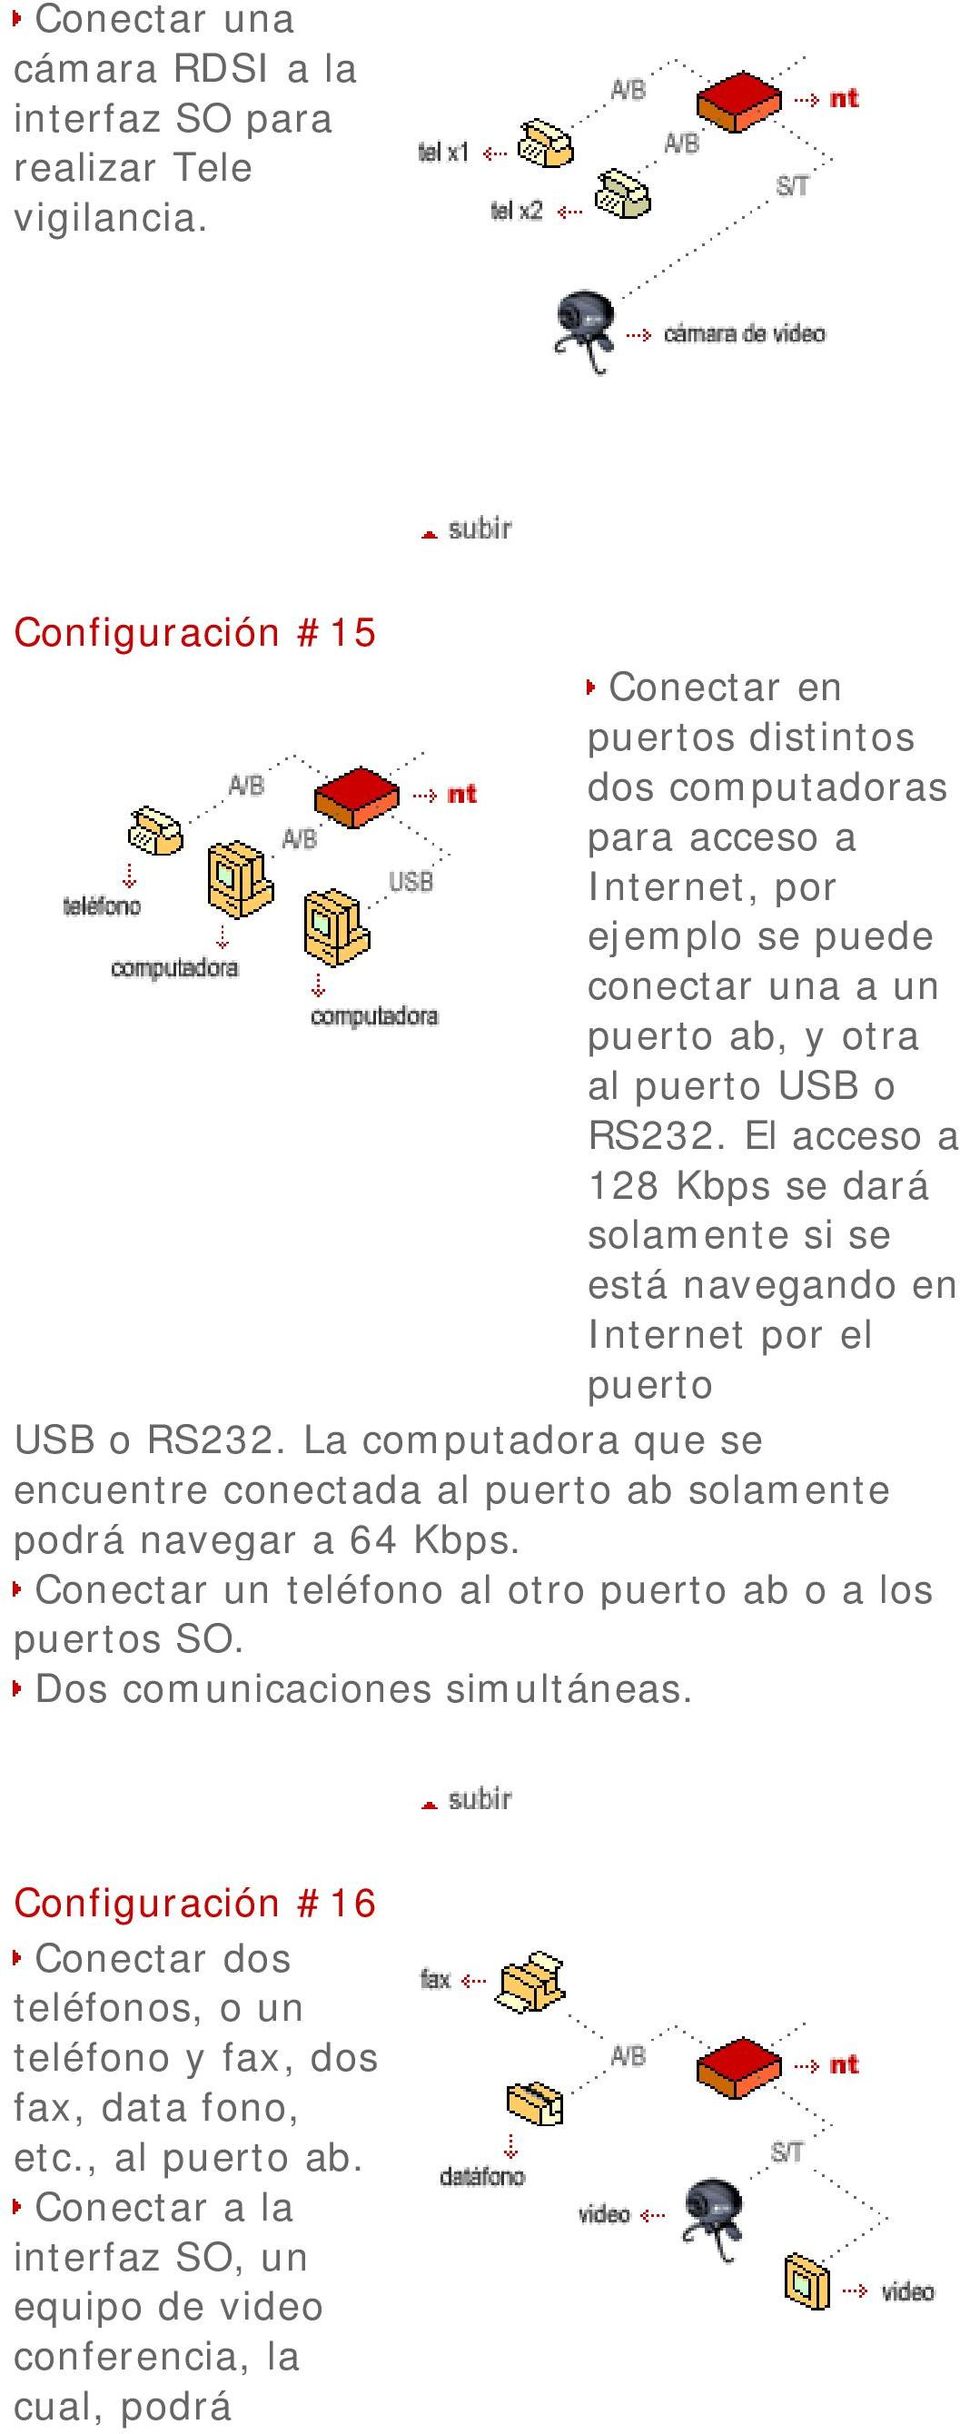 USB o RS232. El acceso a Internet por el puerto USB o RS232. La computadora que se encuentre conectada al puerto ab solamente podrá navegar a 64 Kbps.